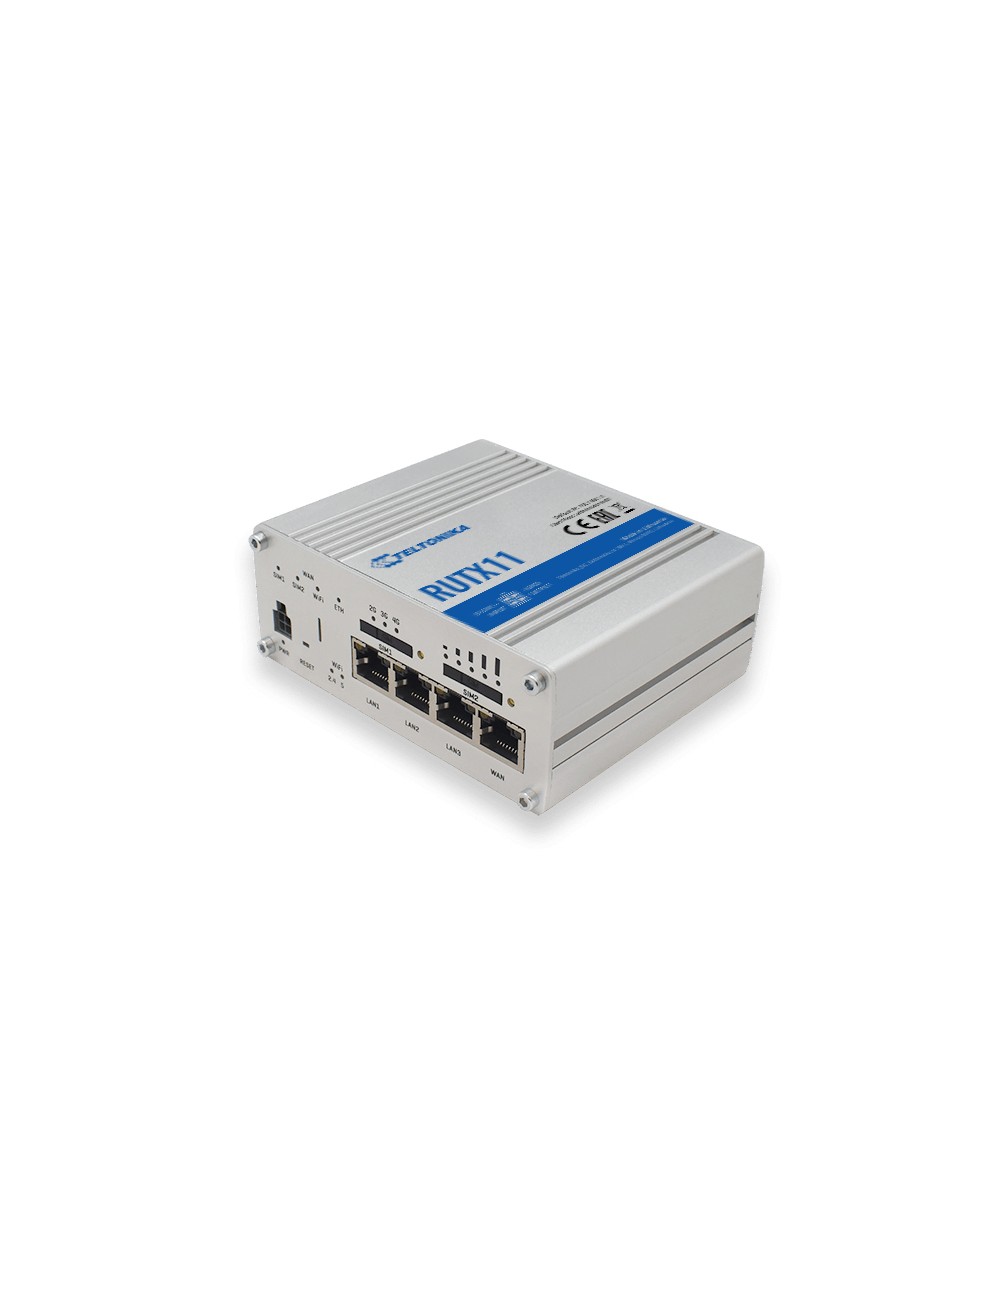 teltonika-rutx11-wireless-router-4-port-switch-1.jpg